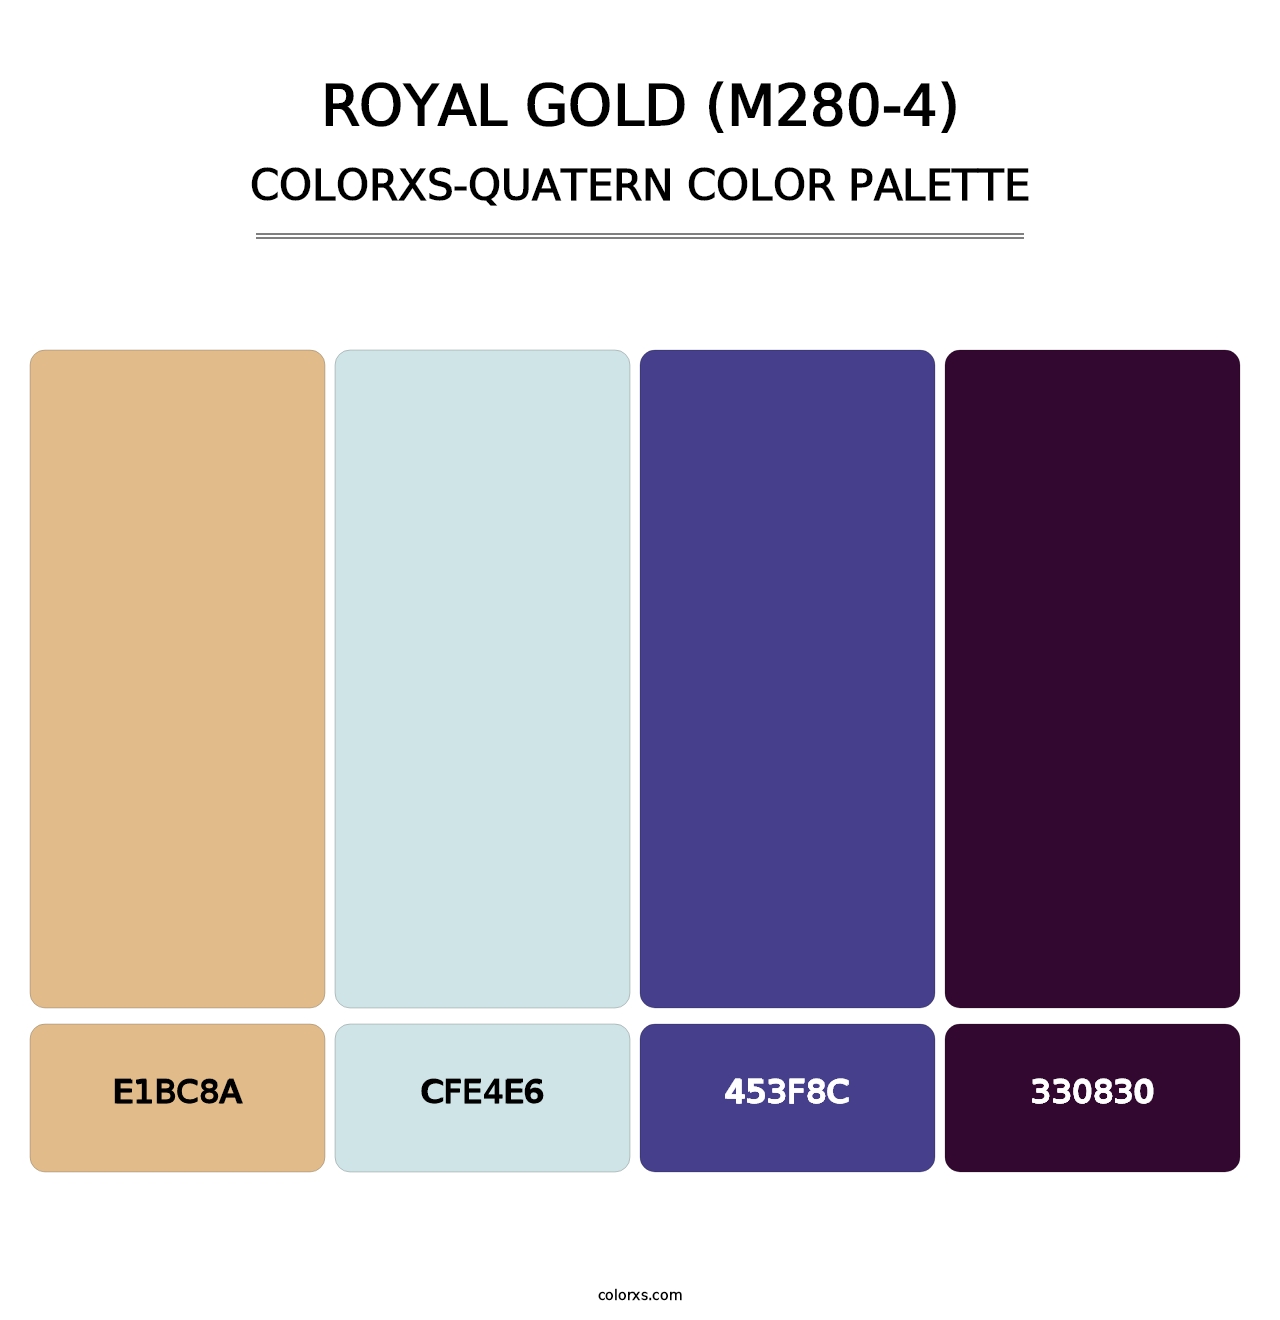 Royal Gold (M280-4) - Colorxs Quatern Palette